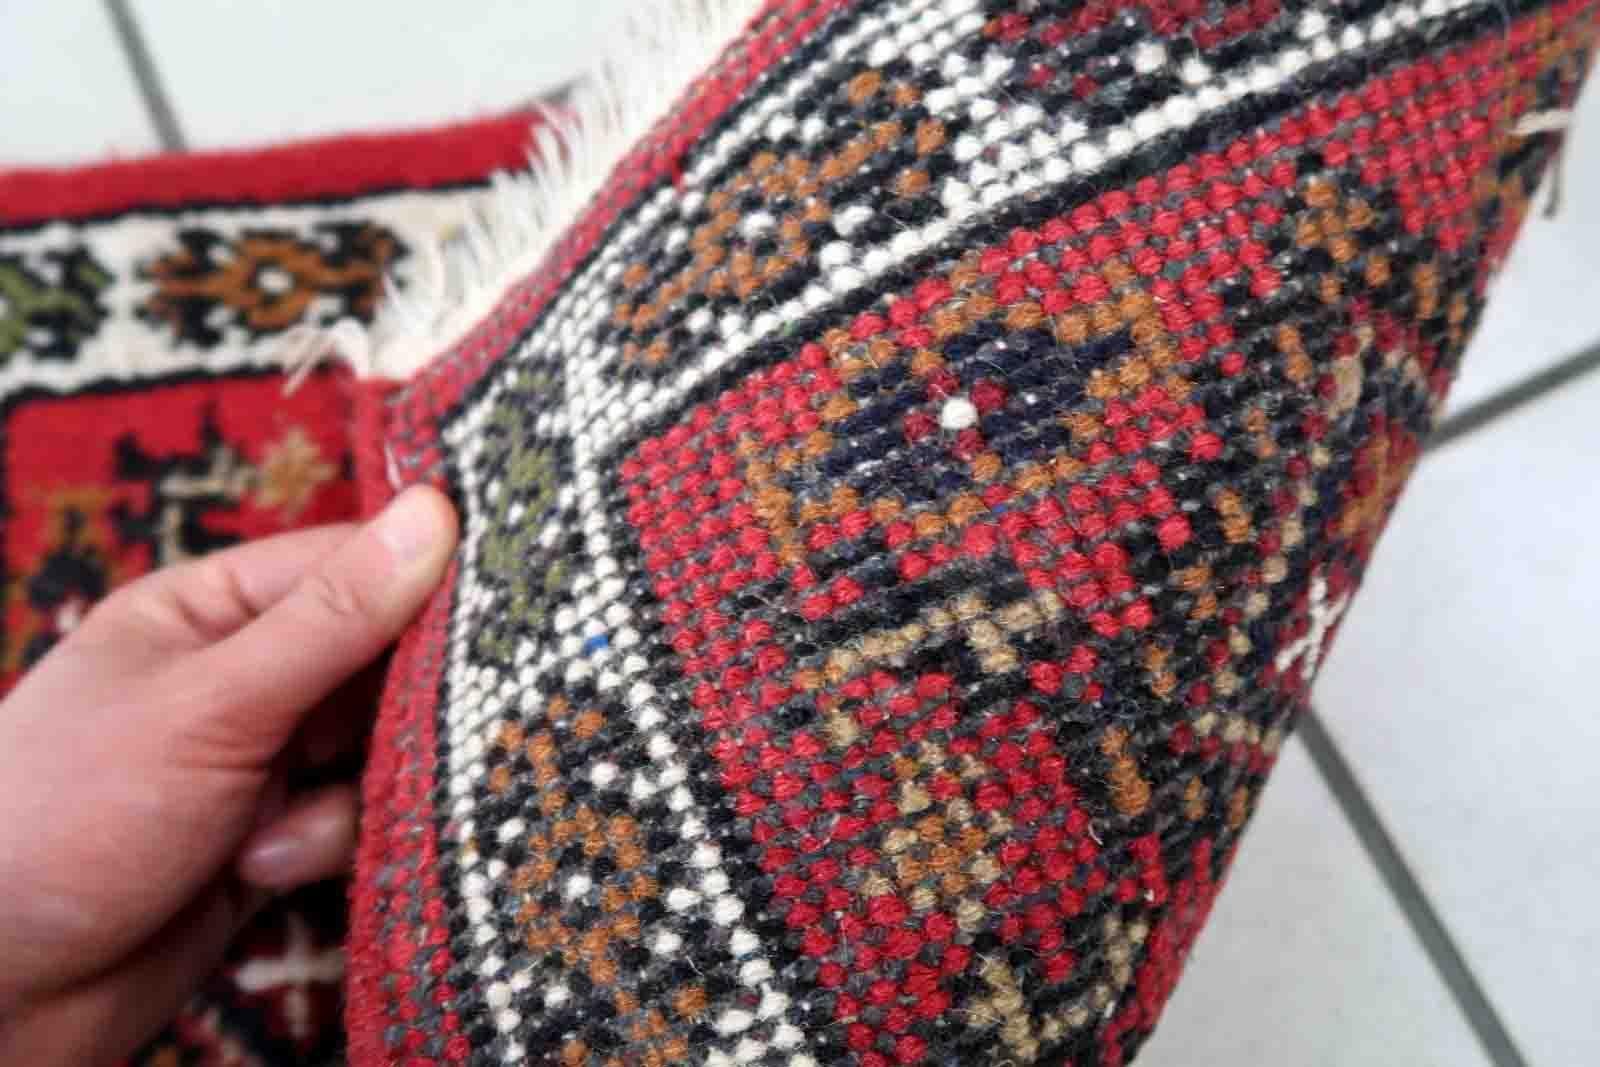 Handgefertigter Vintage-Teppich aus dem Nahen Osten mit traditionellem Medaillonmuster. Der Teppich wurde Ende des 20. Jahrhunderts aus Wolle hergestellt. Er befindet sich in einem guten Originalzustand.

-Zustand: original gut,

-Umgebung: